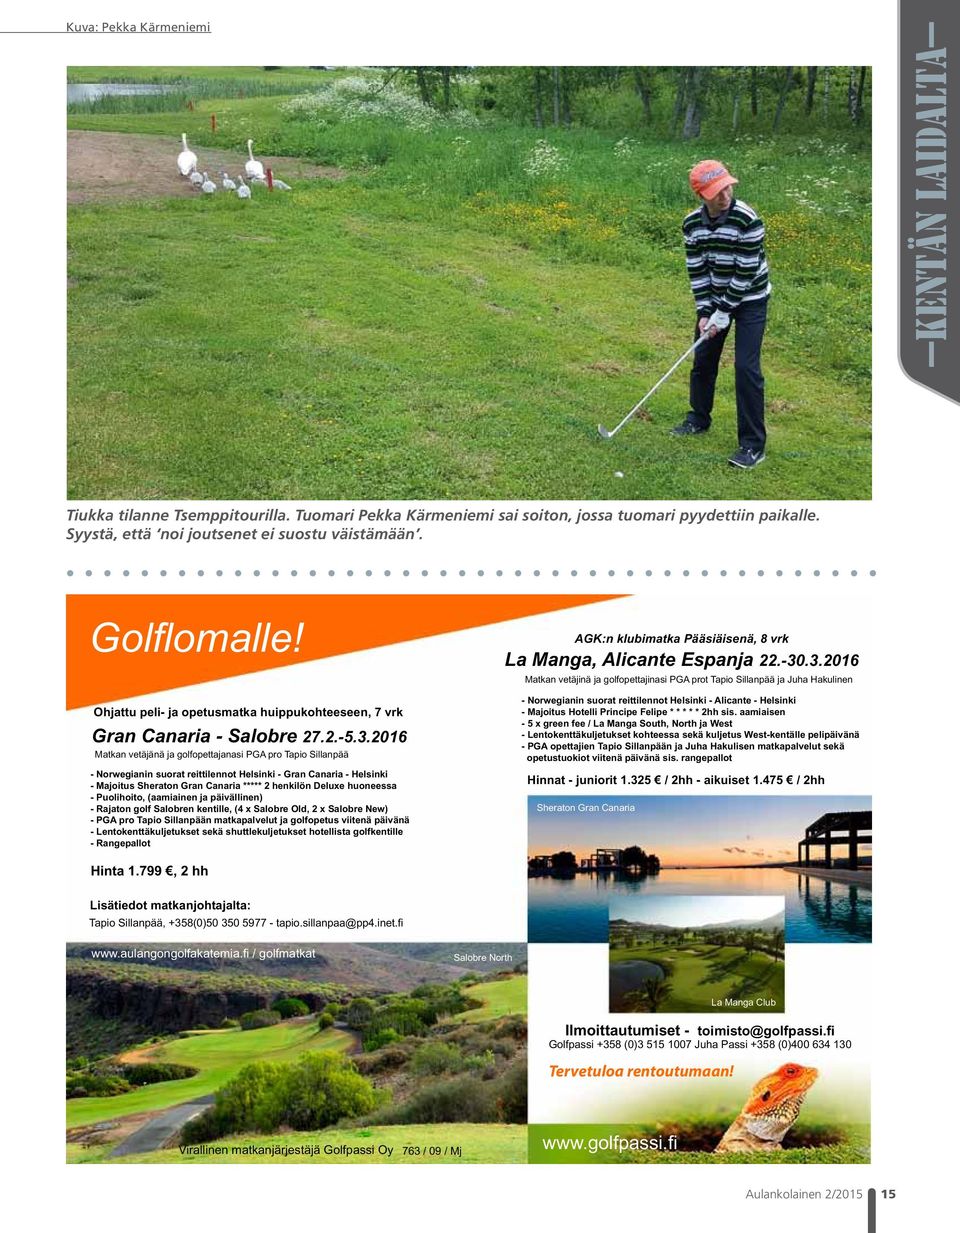 2016 Matkan vetäjänä ja golfopettajanasi PGA pro Tapio Sillanpää - Norwegianin suorat reittilennot Helsinki - Gran Canaria - Helsinki - Majoitus Sheraton Gran Canaria ***** 2 henkilön Deluxe